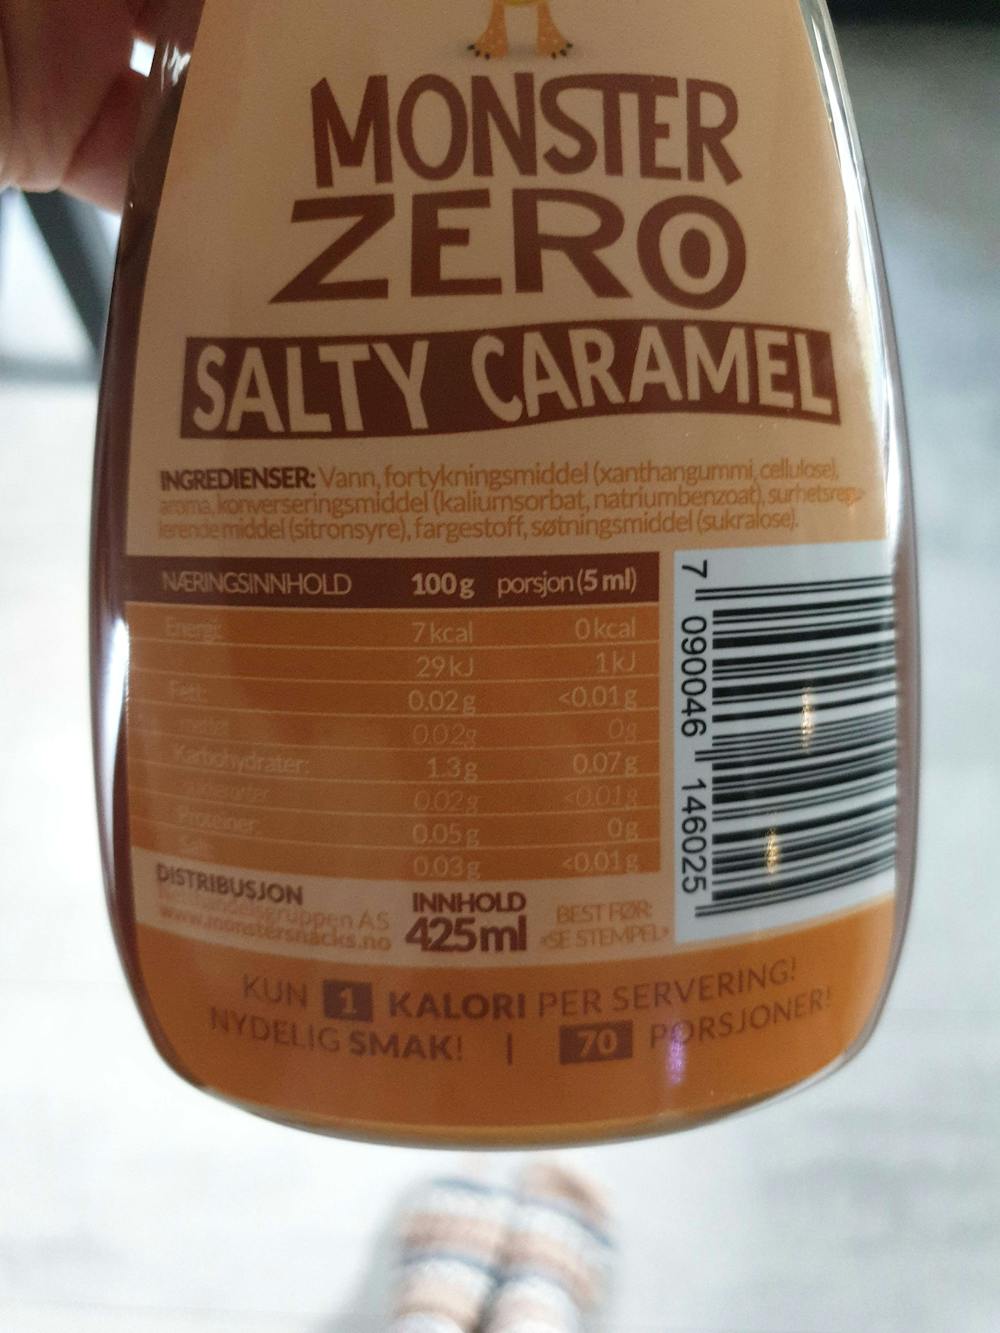 Ingredienslisten til Monster snacks Monster zero salty caramel